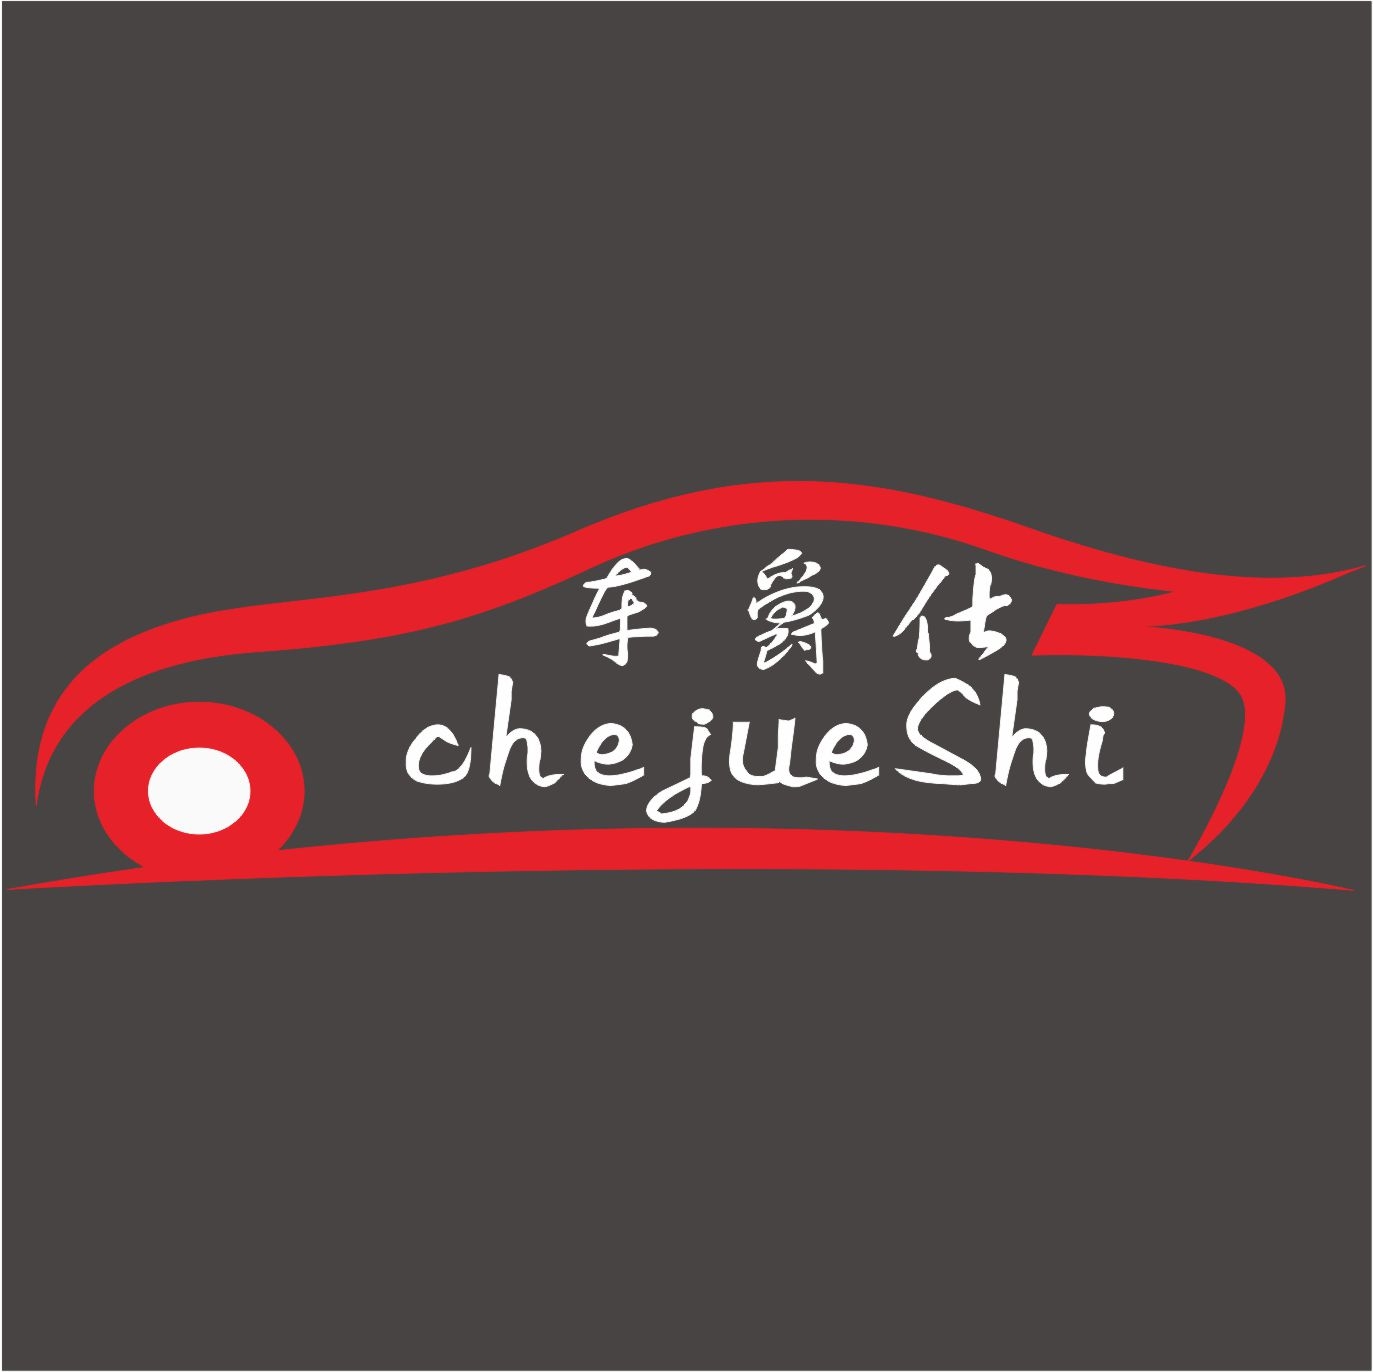 深圳车爵仕汽车改装店 Logo